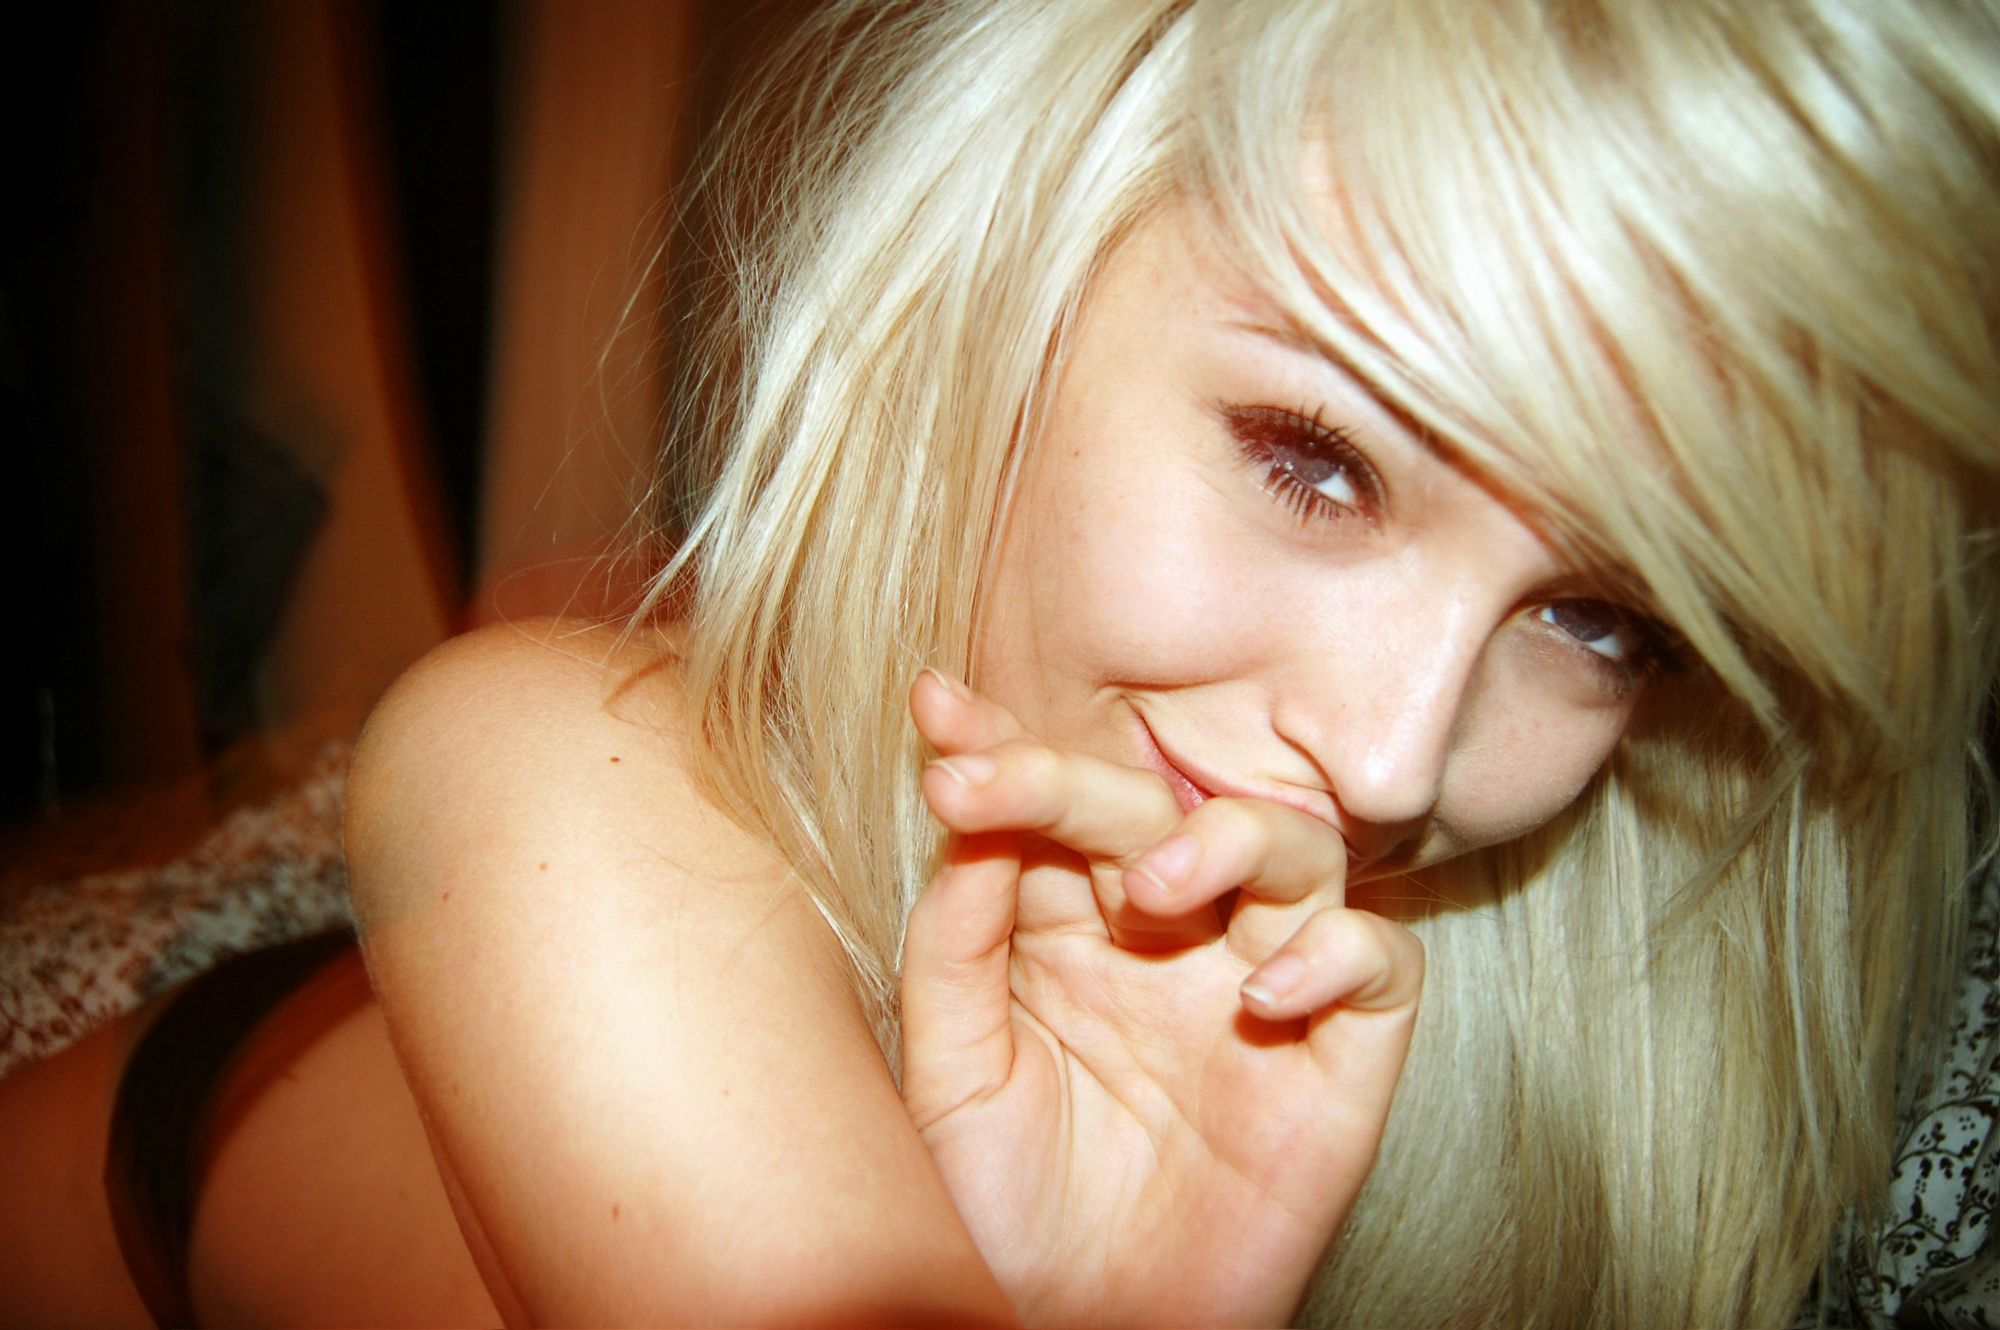 Привлекательная блондинка разделась в гостях у друга - порно фото